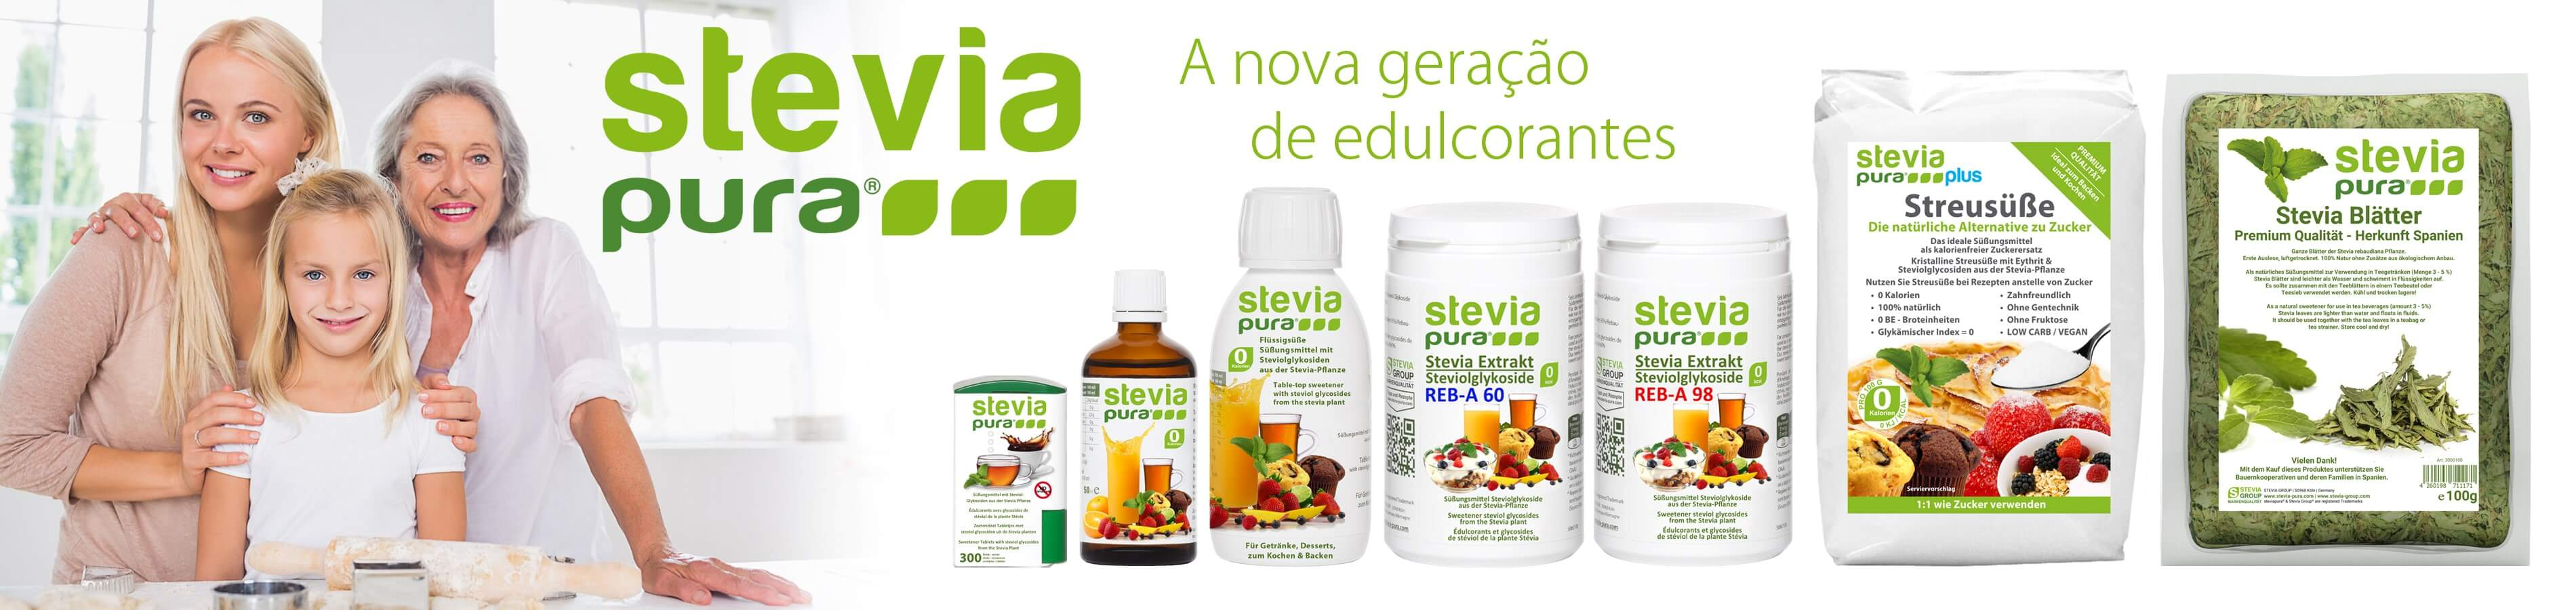 Comprar Stevia | Produtos de substituição de açúcar de alta qualidade Stevia e Eritritol | steviapura